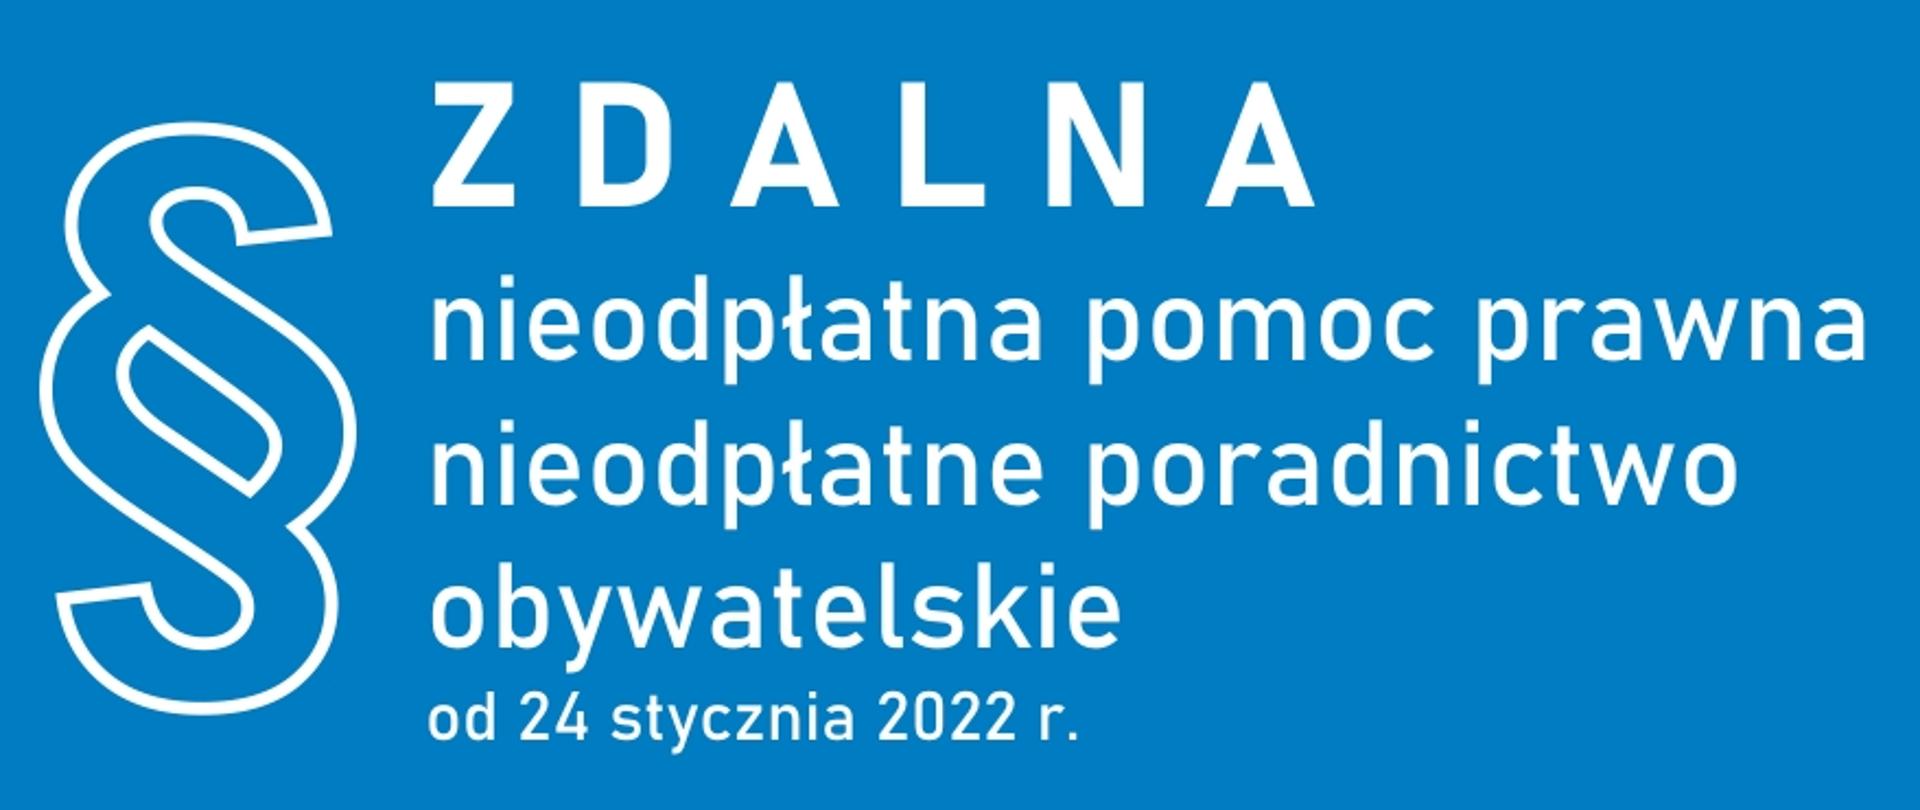 Baner przedstawia biały napis Zdalna nieodpłatna pomoc prawna nieodpłatne poradnictwo obywatelskie od 24 stycznia 2022 r. oraz symbol paragrafu na błękitnym tle